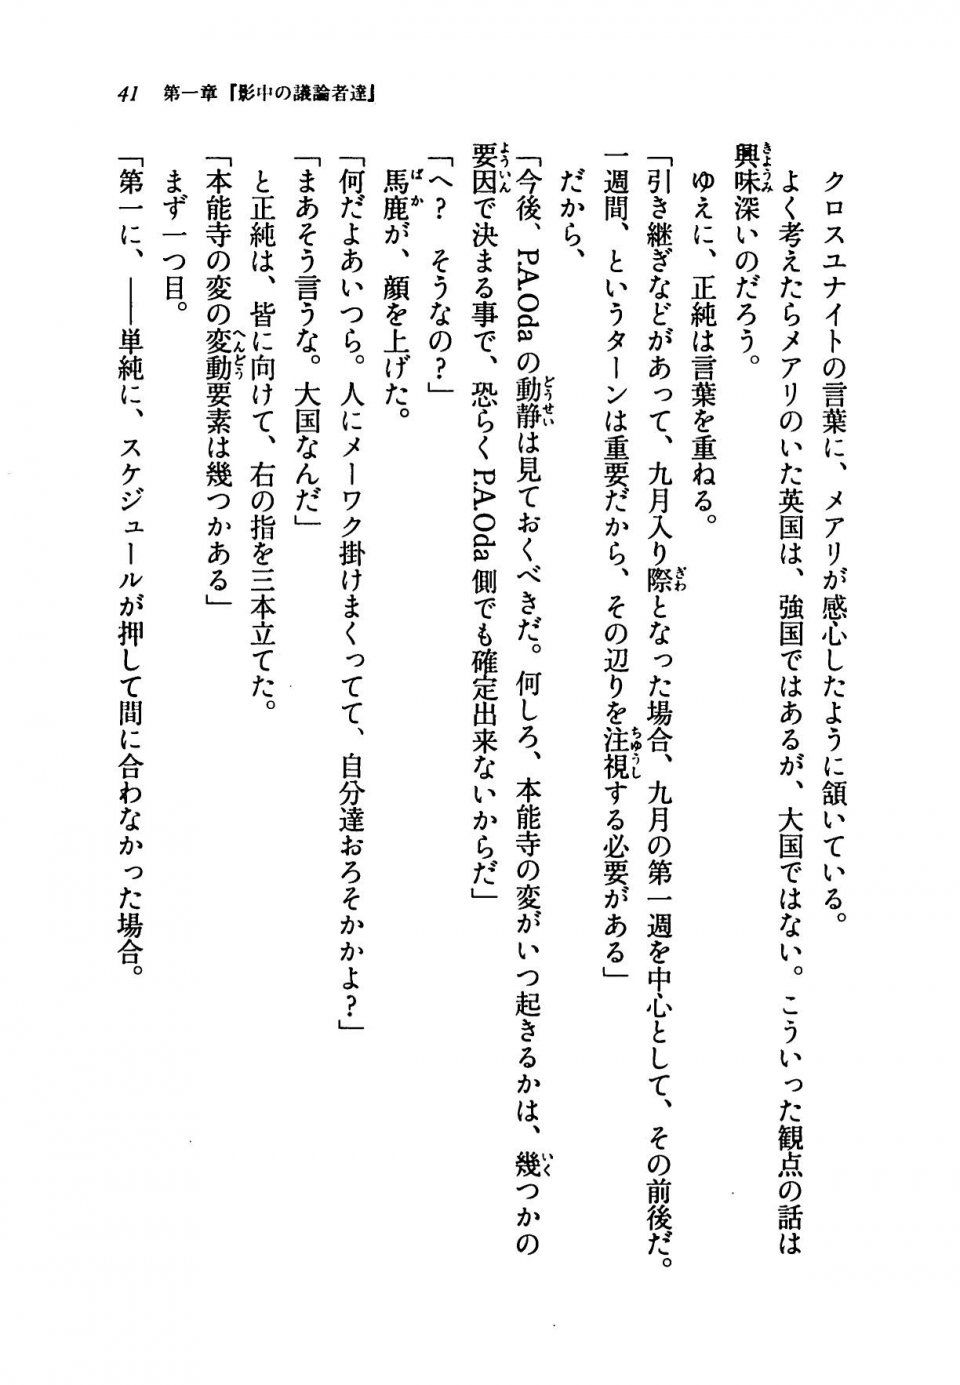 Kyoukai Senjou no Horizon LN Vol 19(8A) - Photo #41